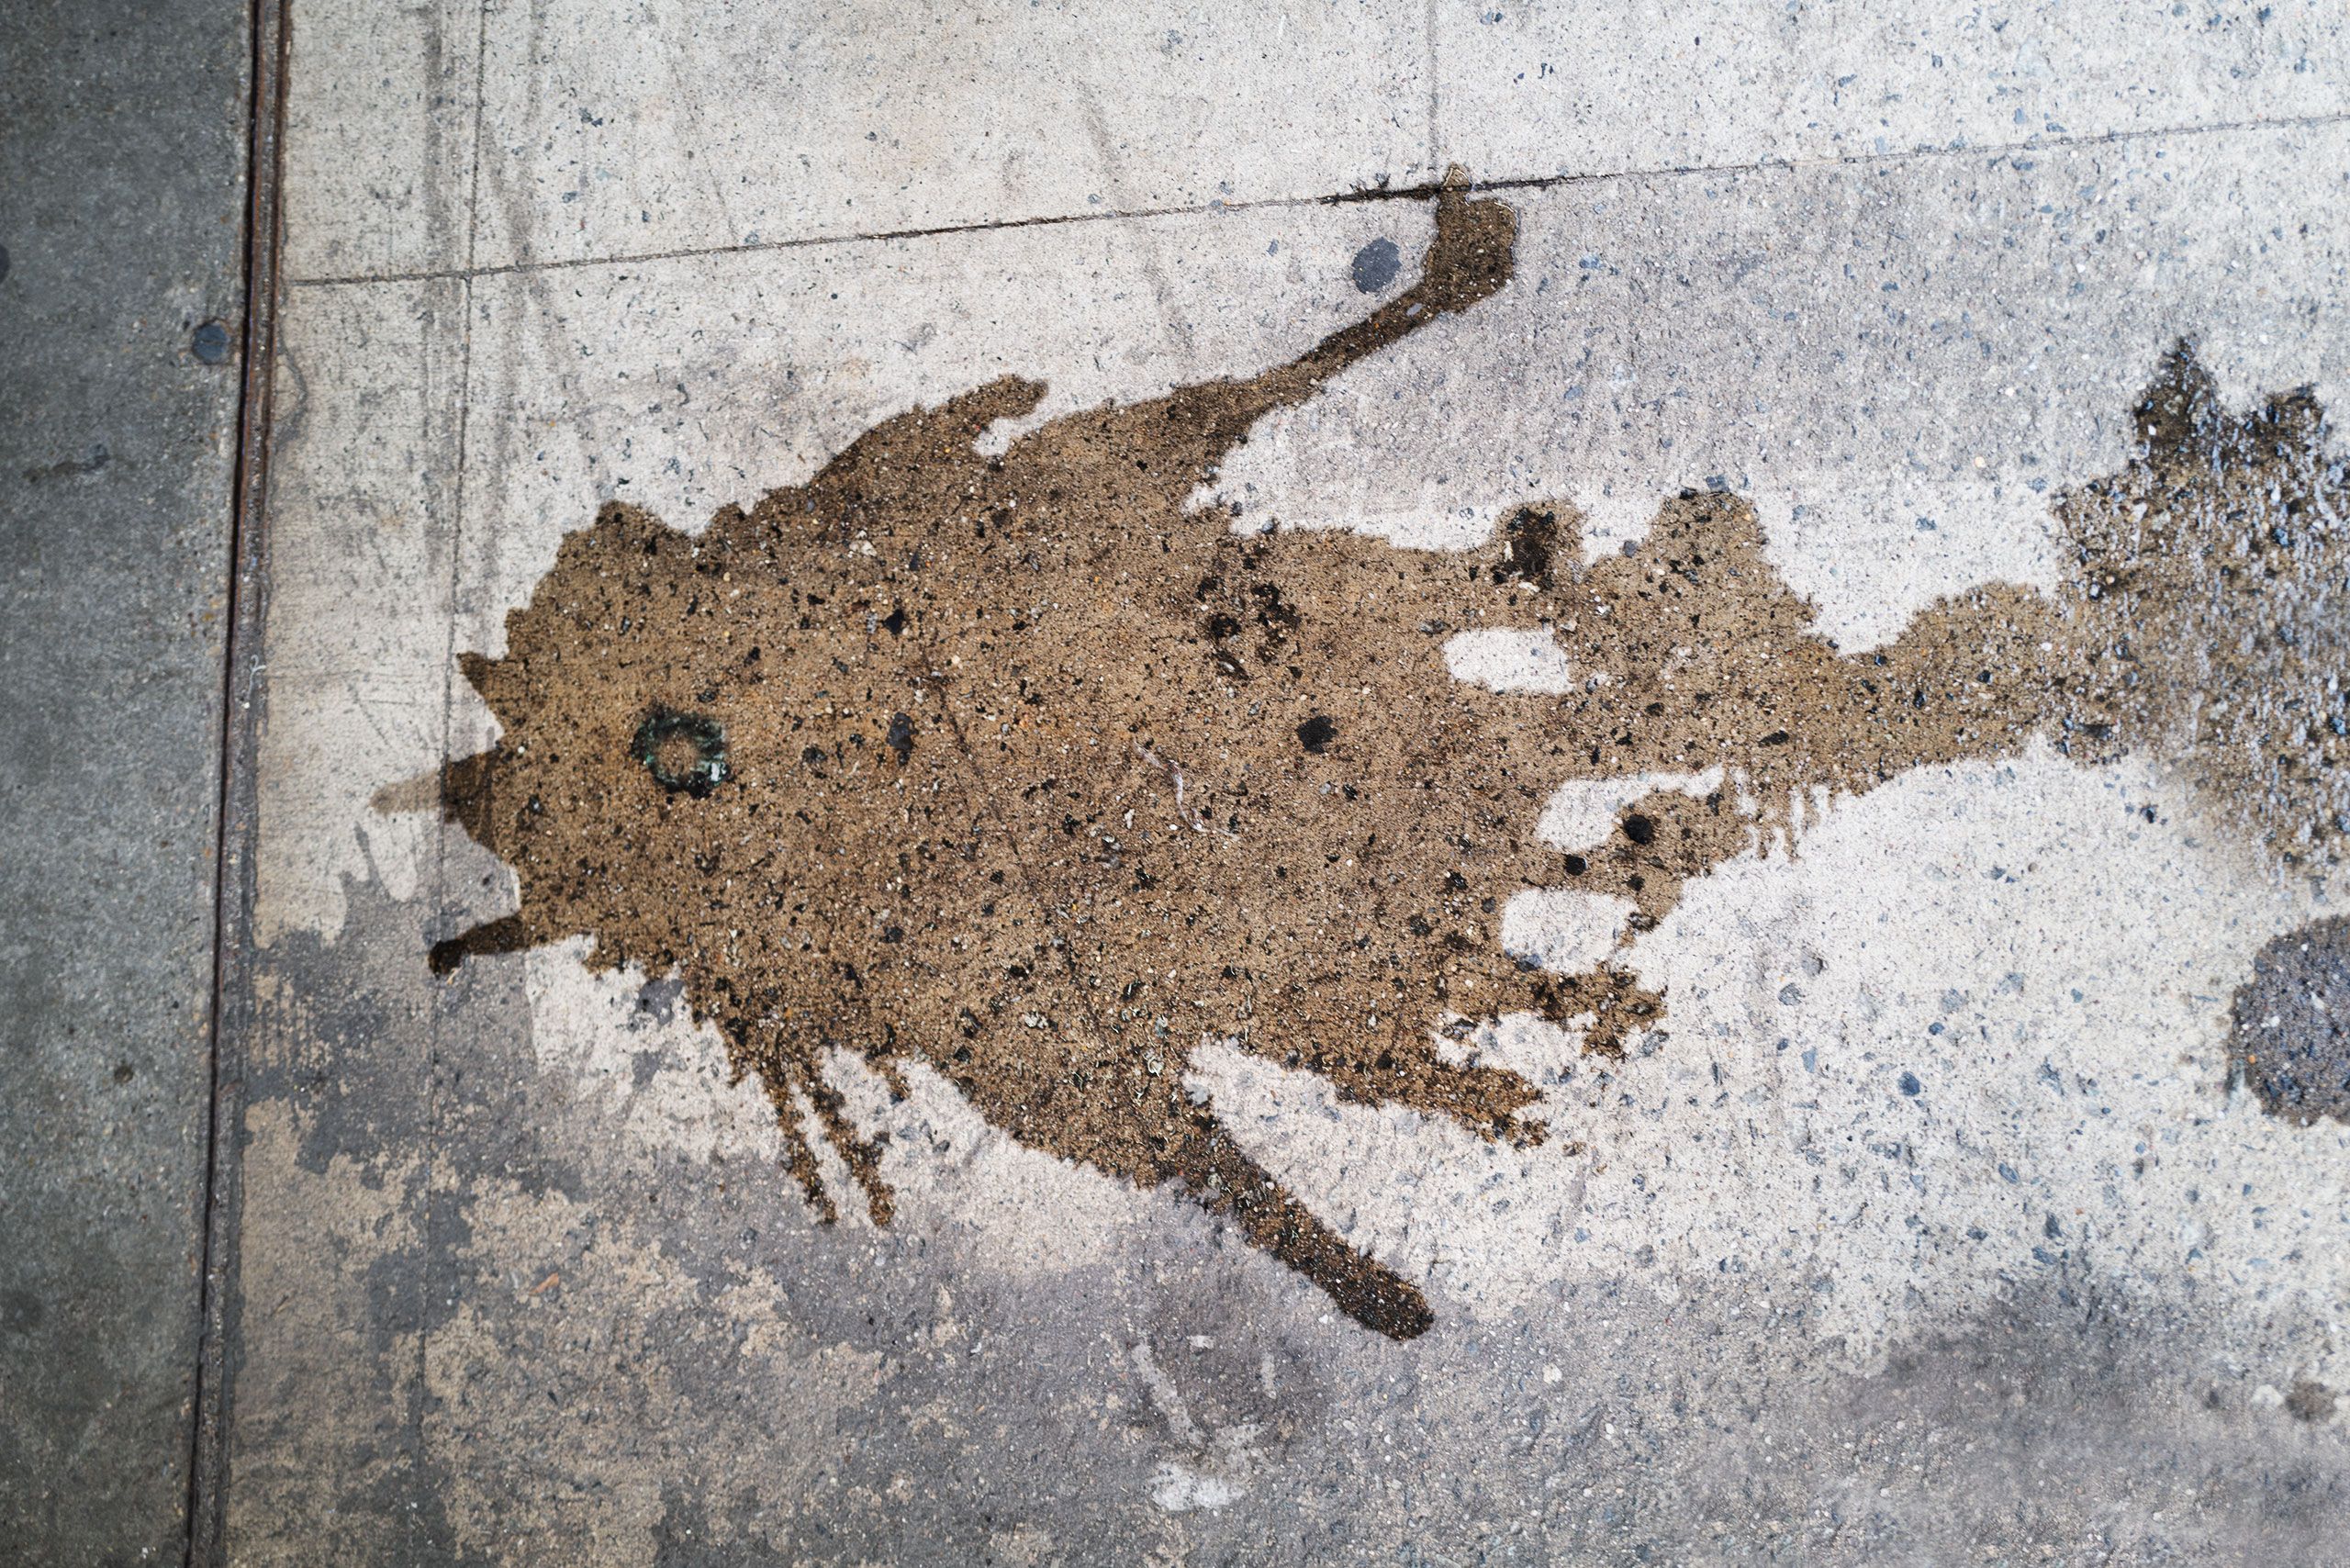 Fish shape in fluid on sidewalk in New York City